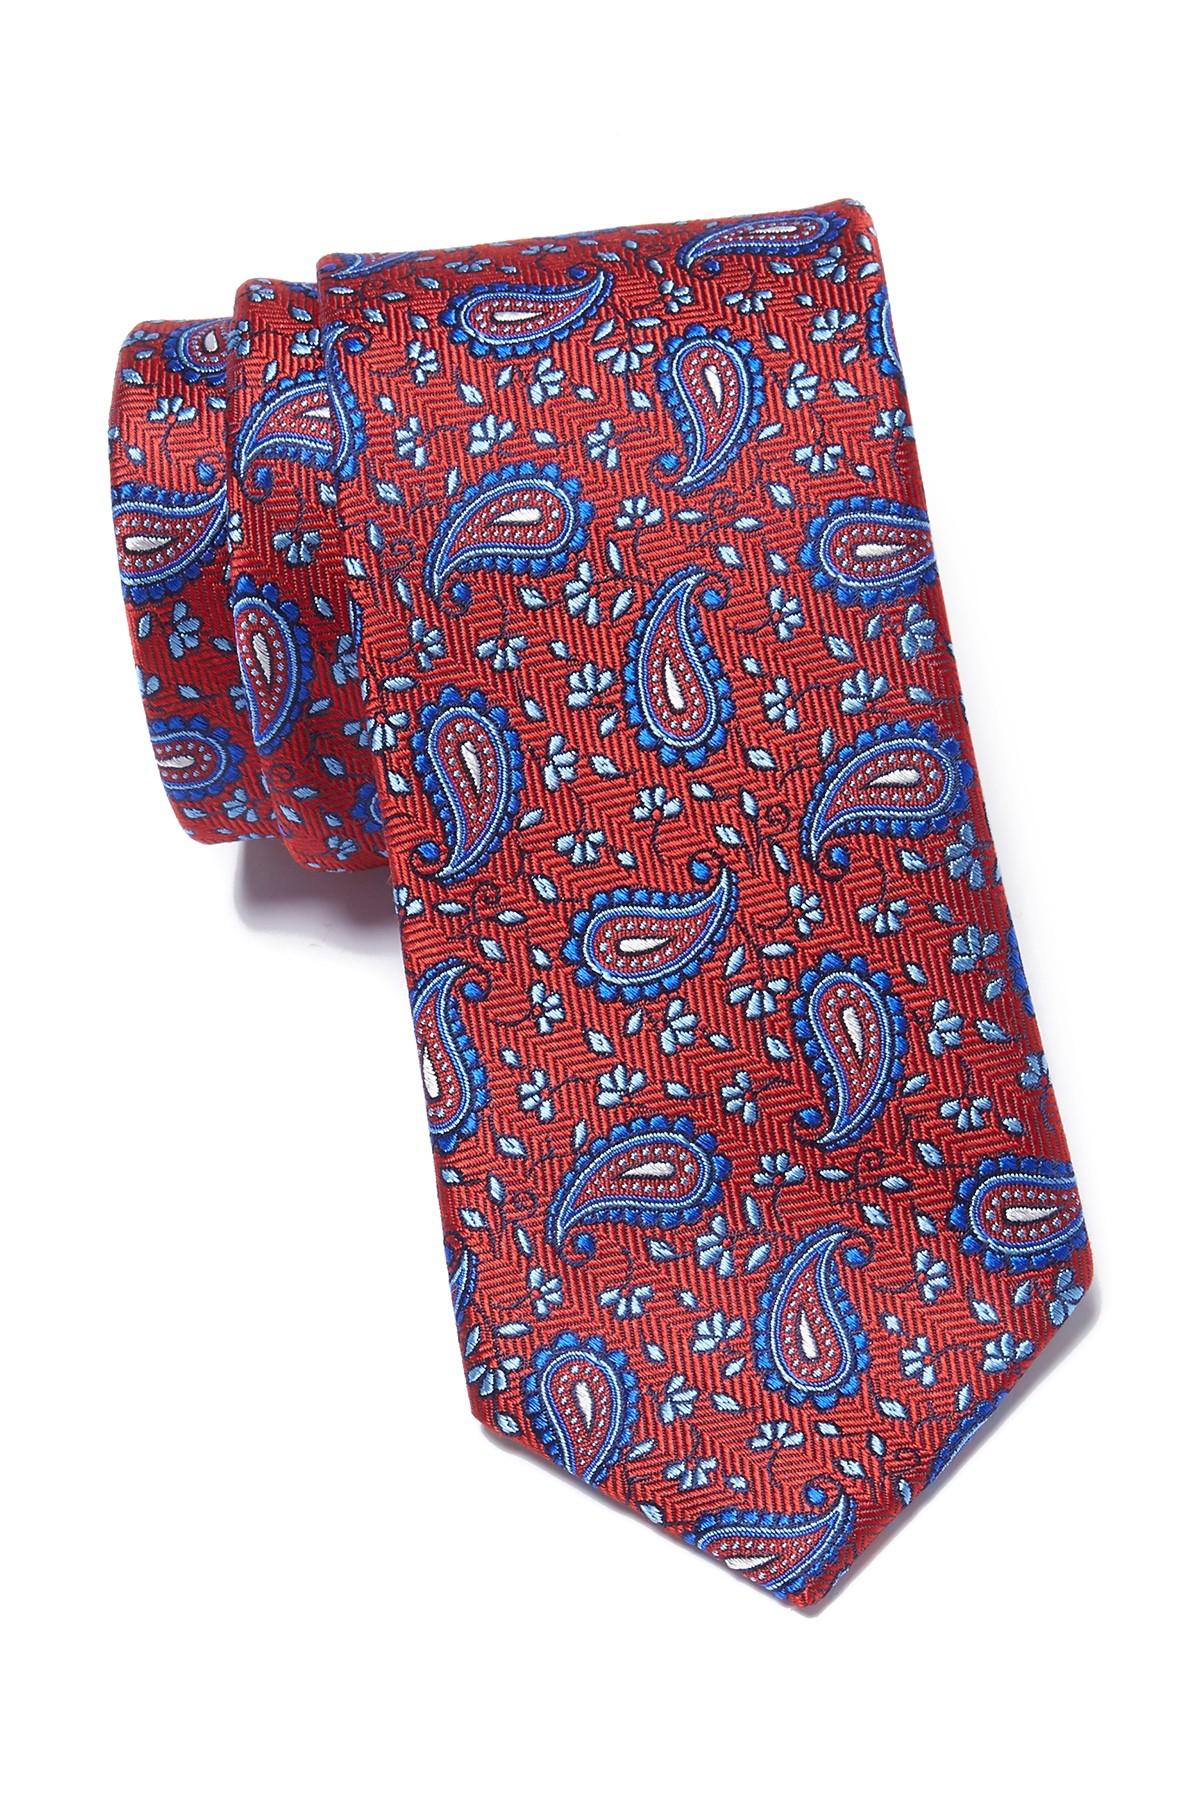 Ted Baker Herringbone Pine Silk Tie in Red for Men - Lyst